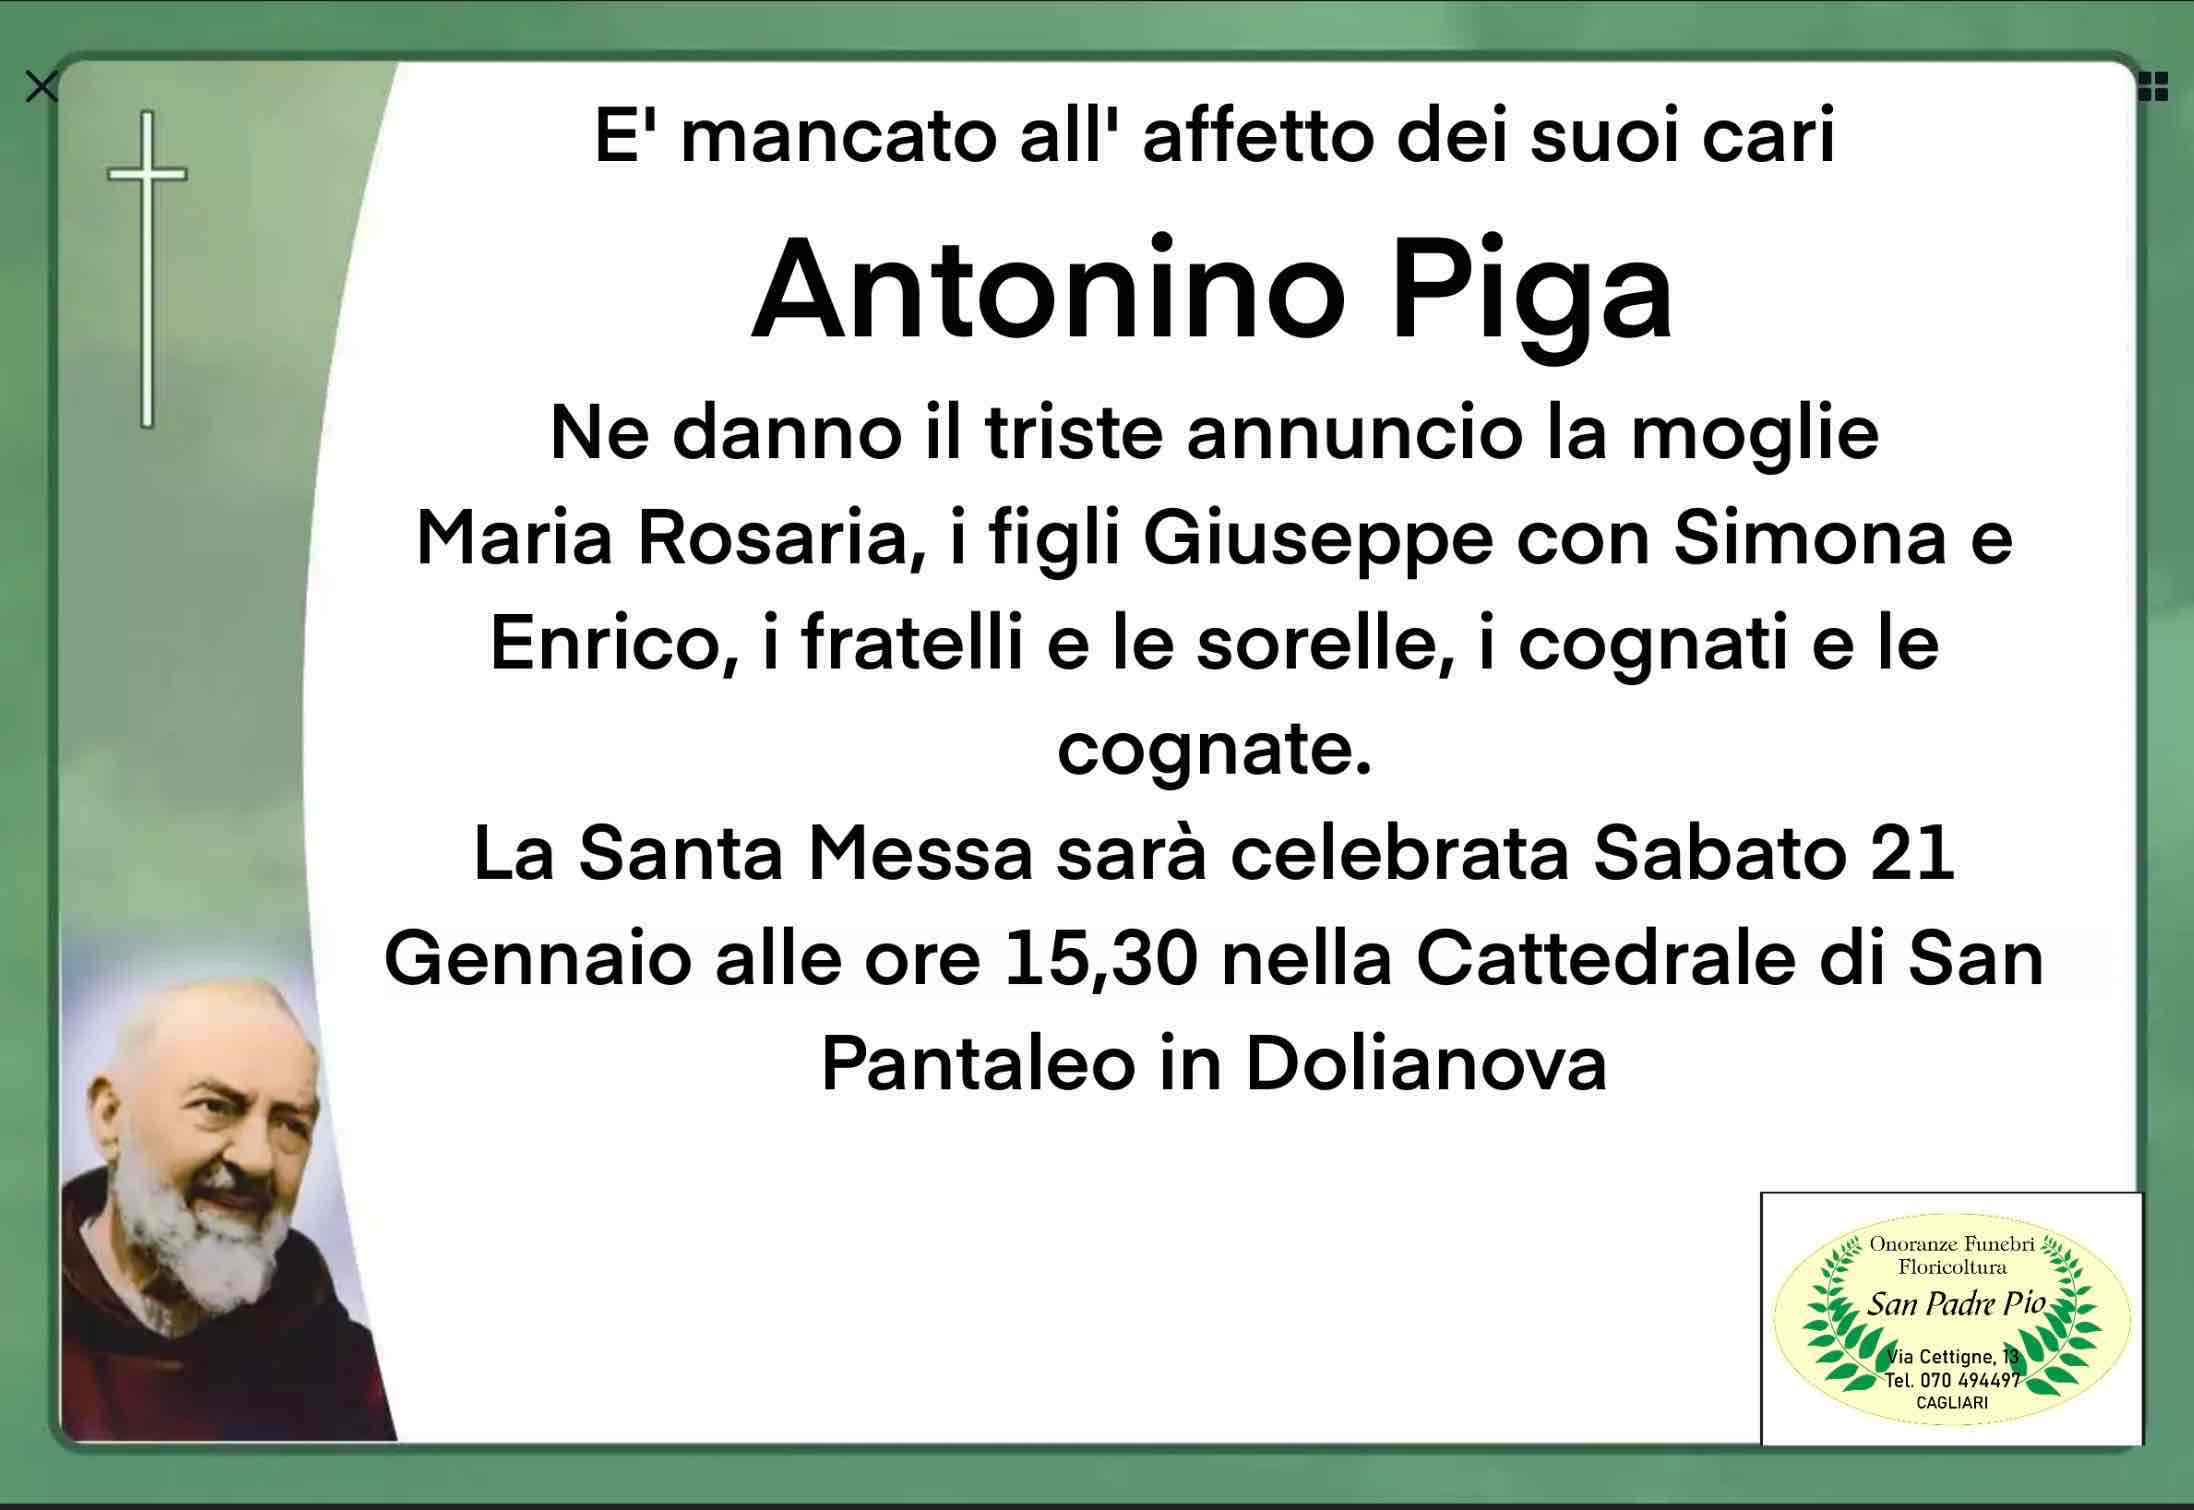 Antonino Piga